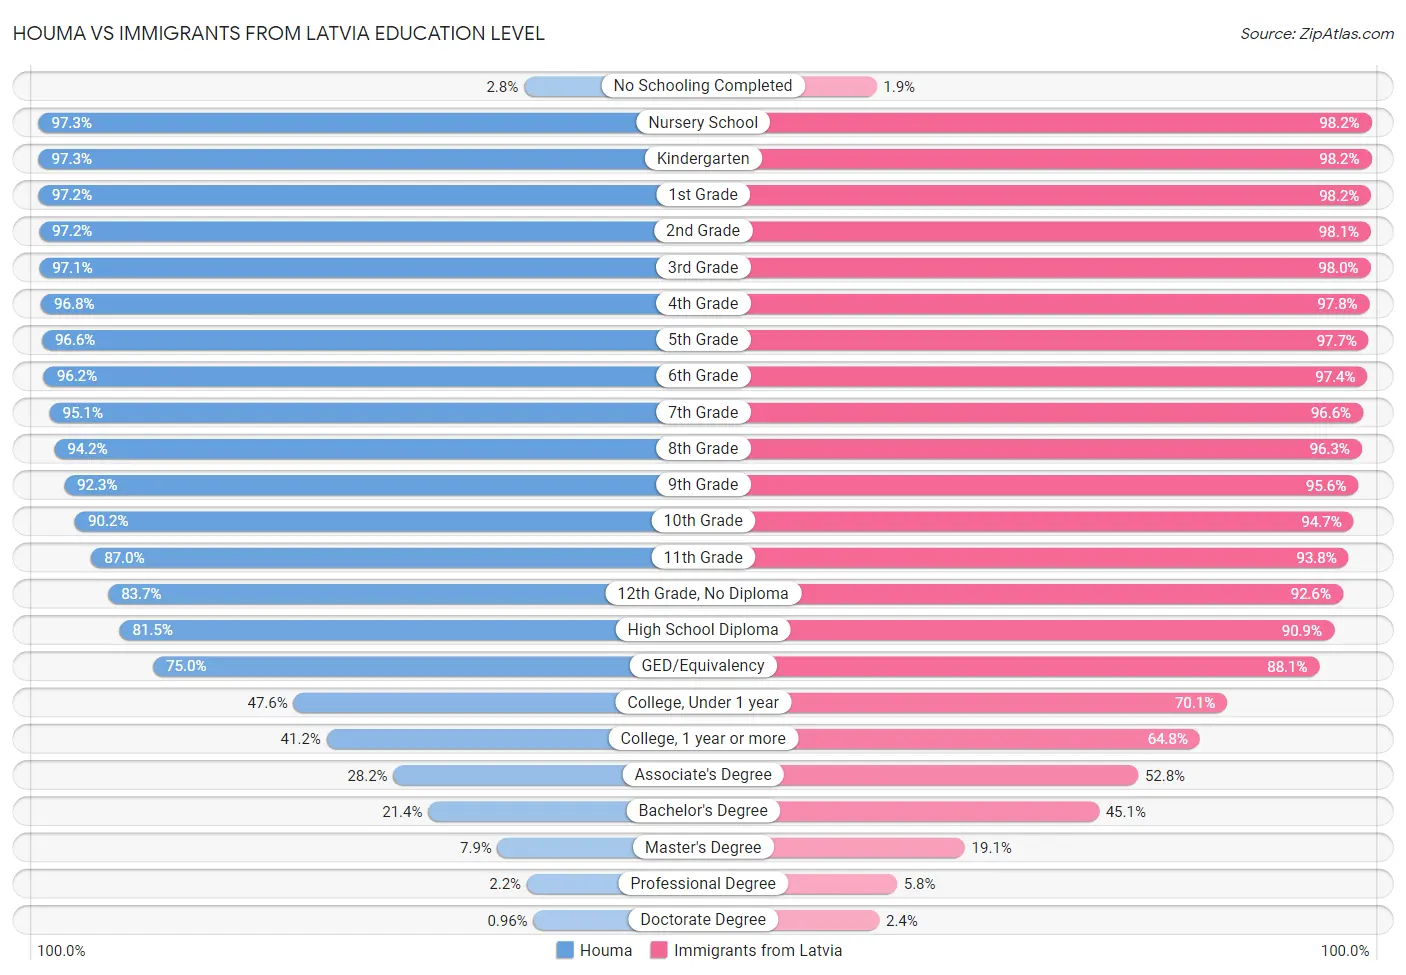 Houma vs Immigrants from Latvia Education Level